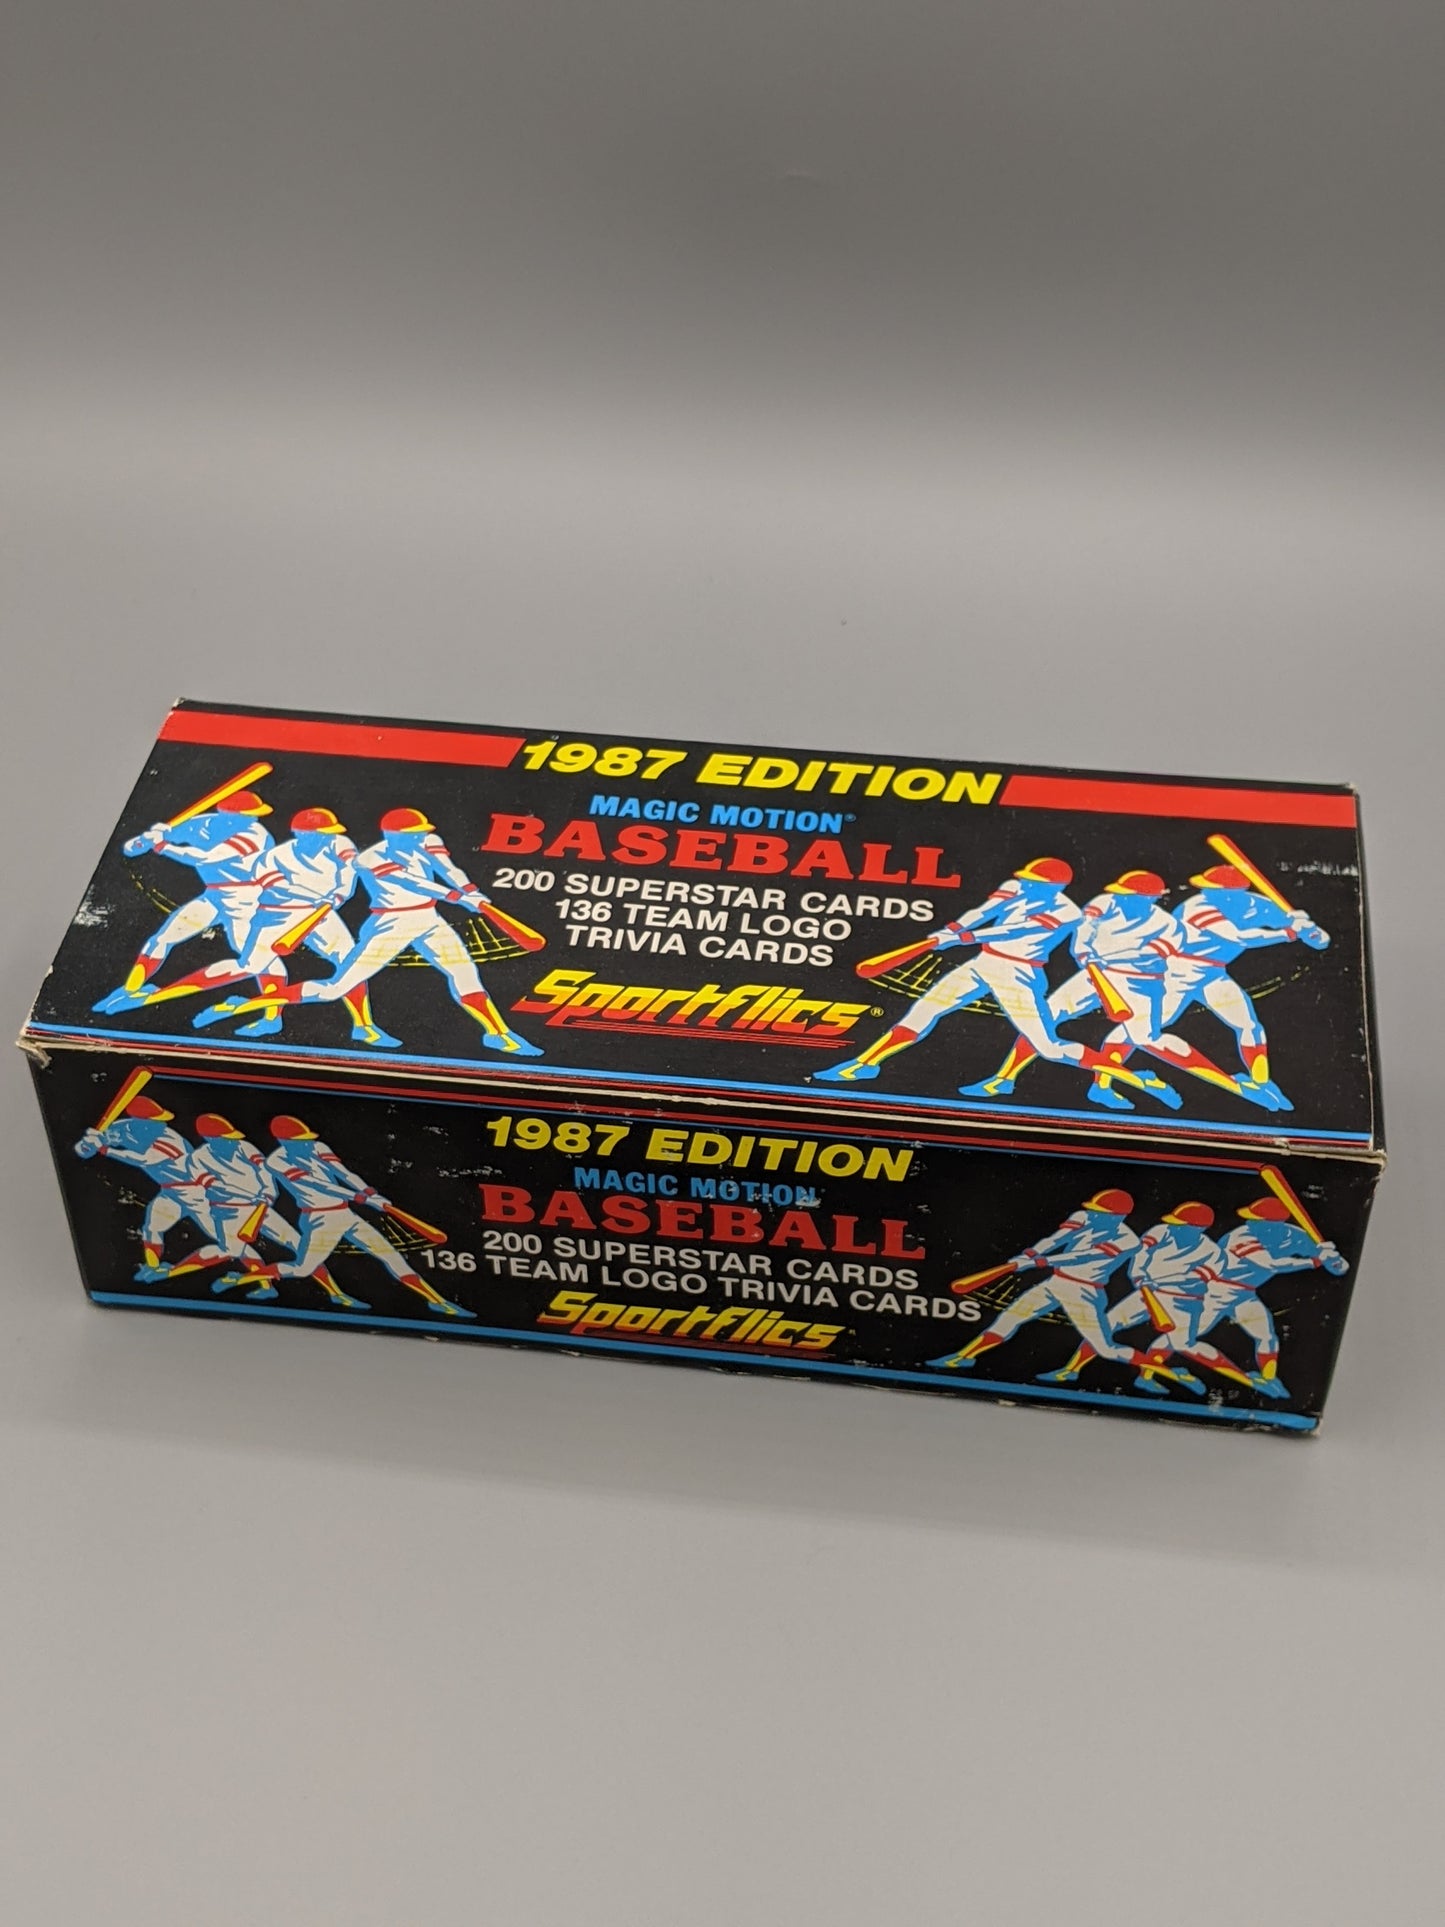 1987 Sportflics Complete Factory Set W/ Team Logo Trivia Cards